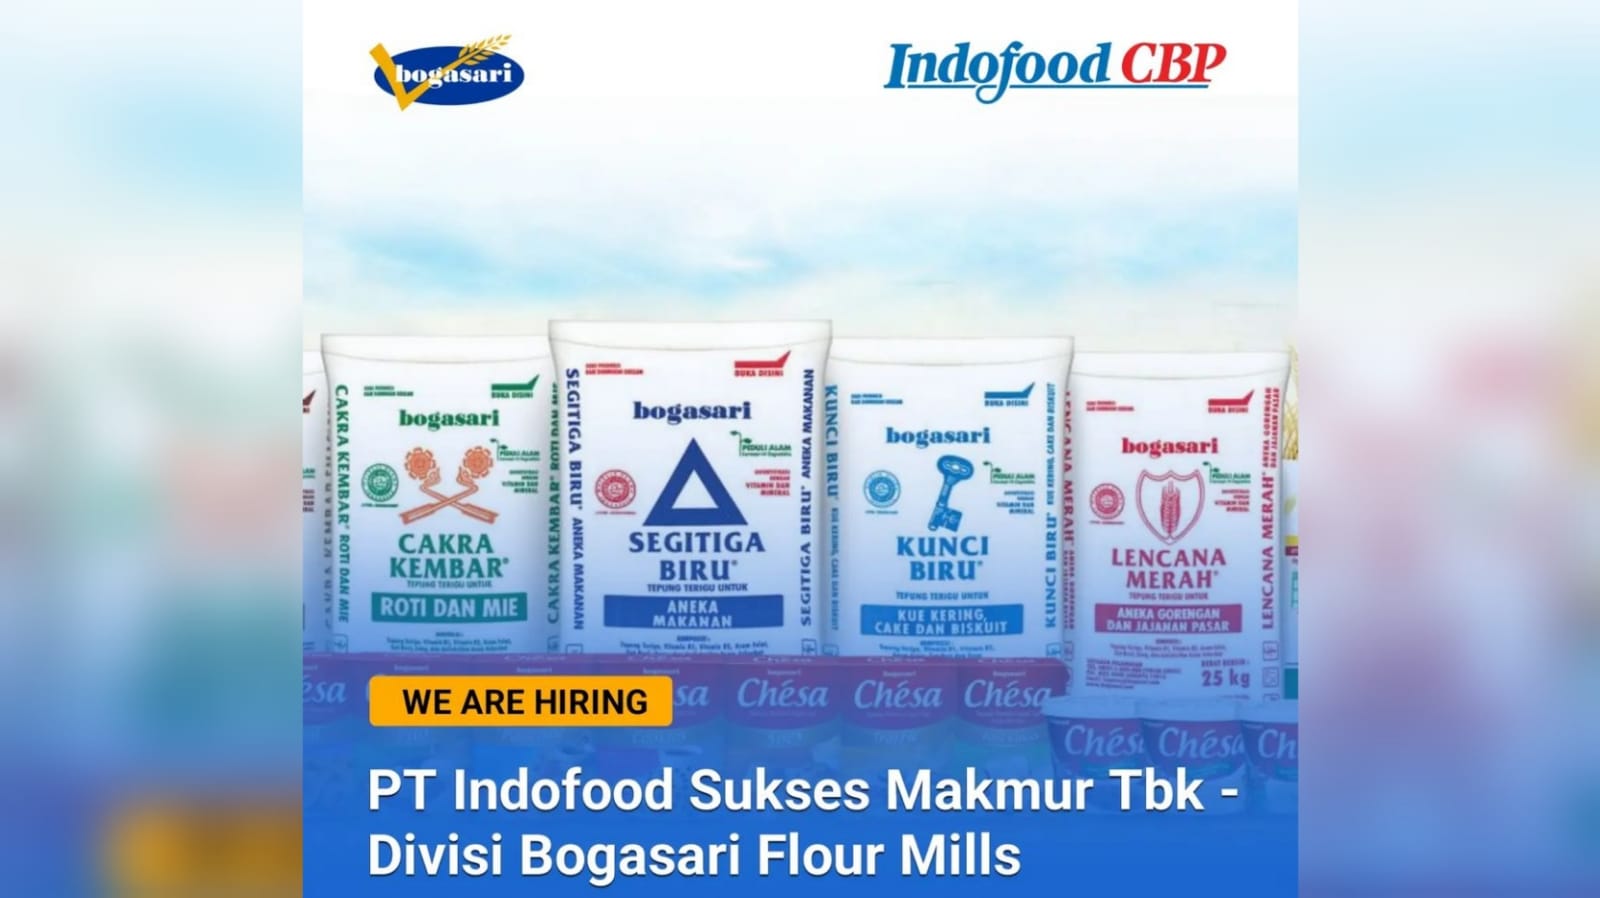 PT Indofood Sukses Makmur Tbk dari Divisi Bogasari Flour Mills Membuka Lowongan Kerja Lulusan SMU/SMK dan D3